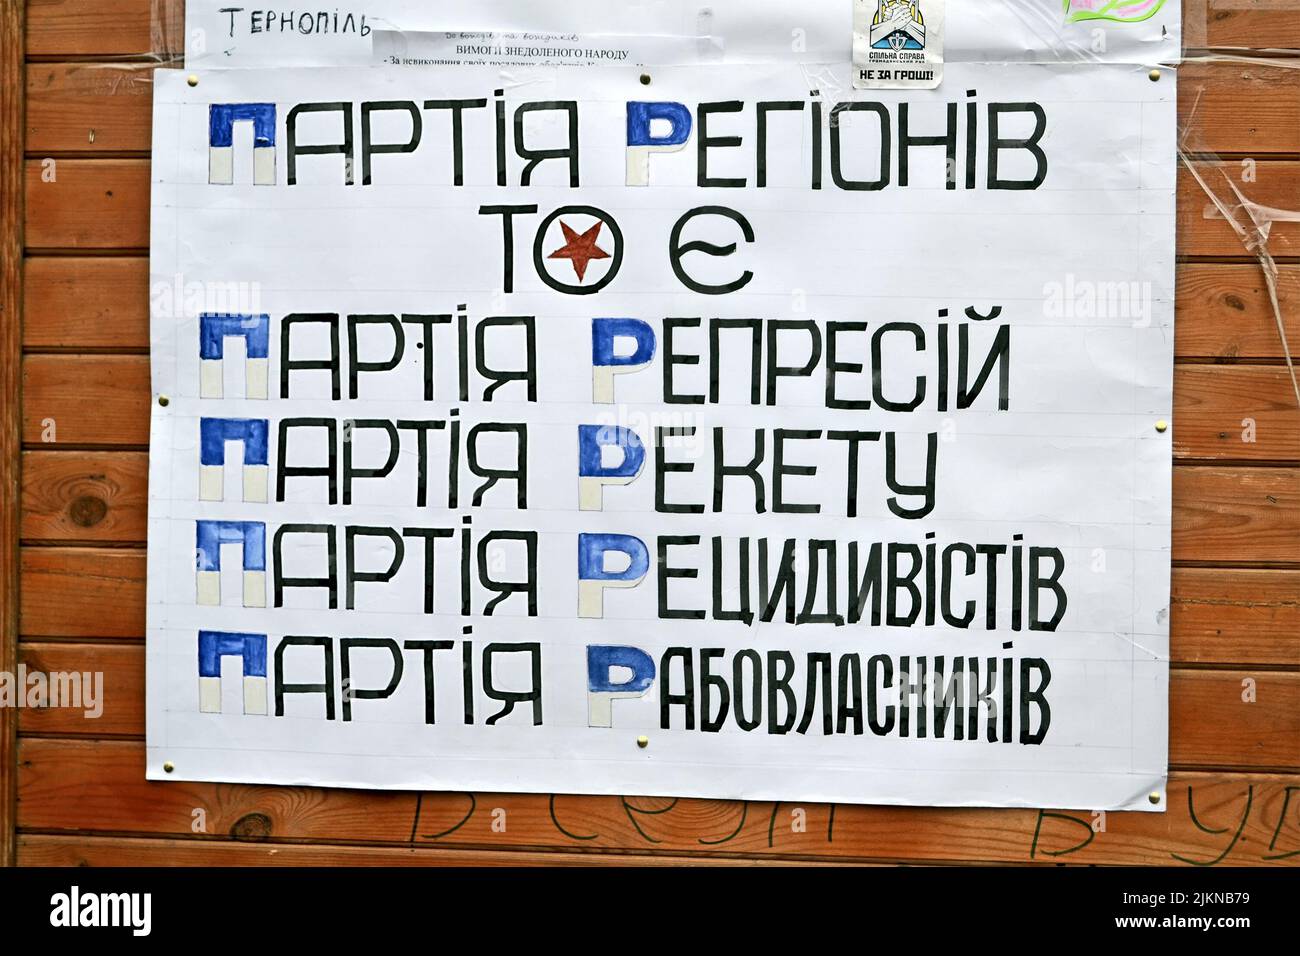 Affiche sur la langue ukrainienne sur la réunion Euro maidan à Kiev. Réunion consacrée au déclin de la forintégration de l'Ukraine dans l'Union européenne. Banque D'Images